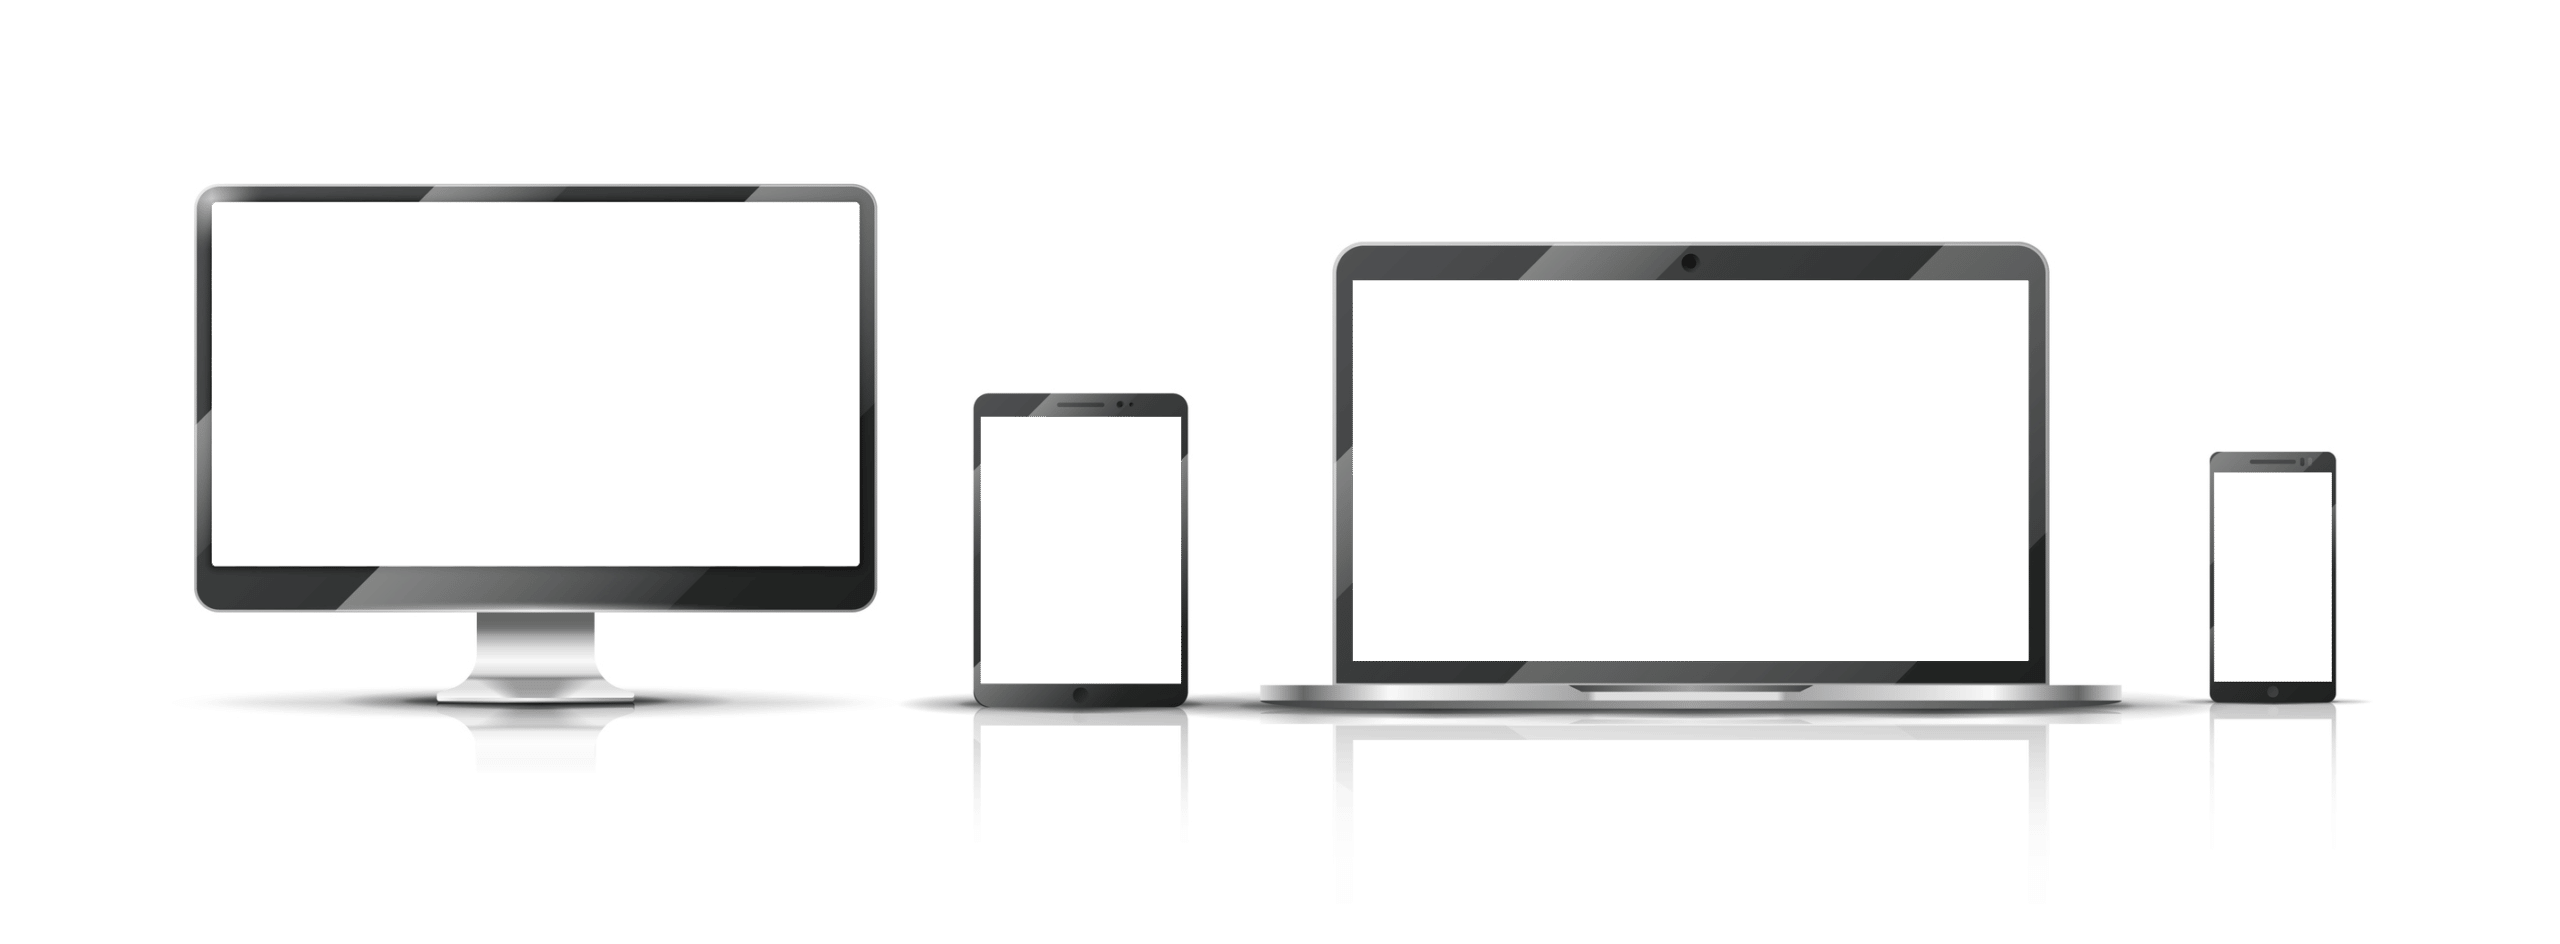 Verschiedene Endgeräte: Desktop-PC, Tablet, Laptop und Smartphone